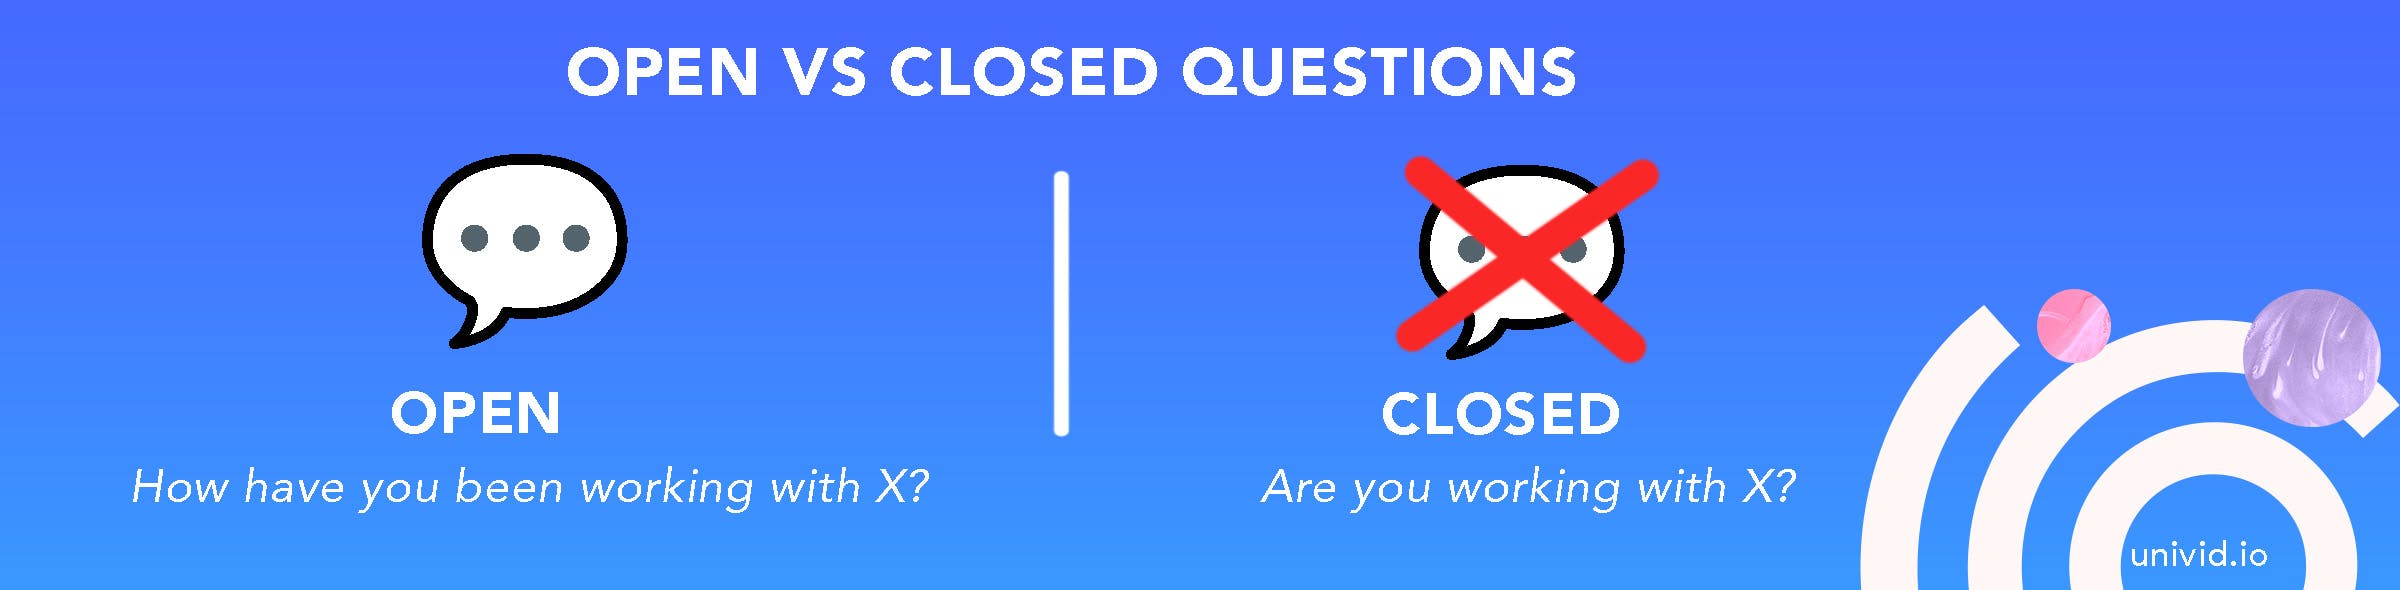 Open vs closed questions - Webinar 101